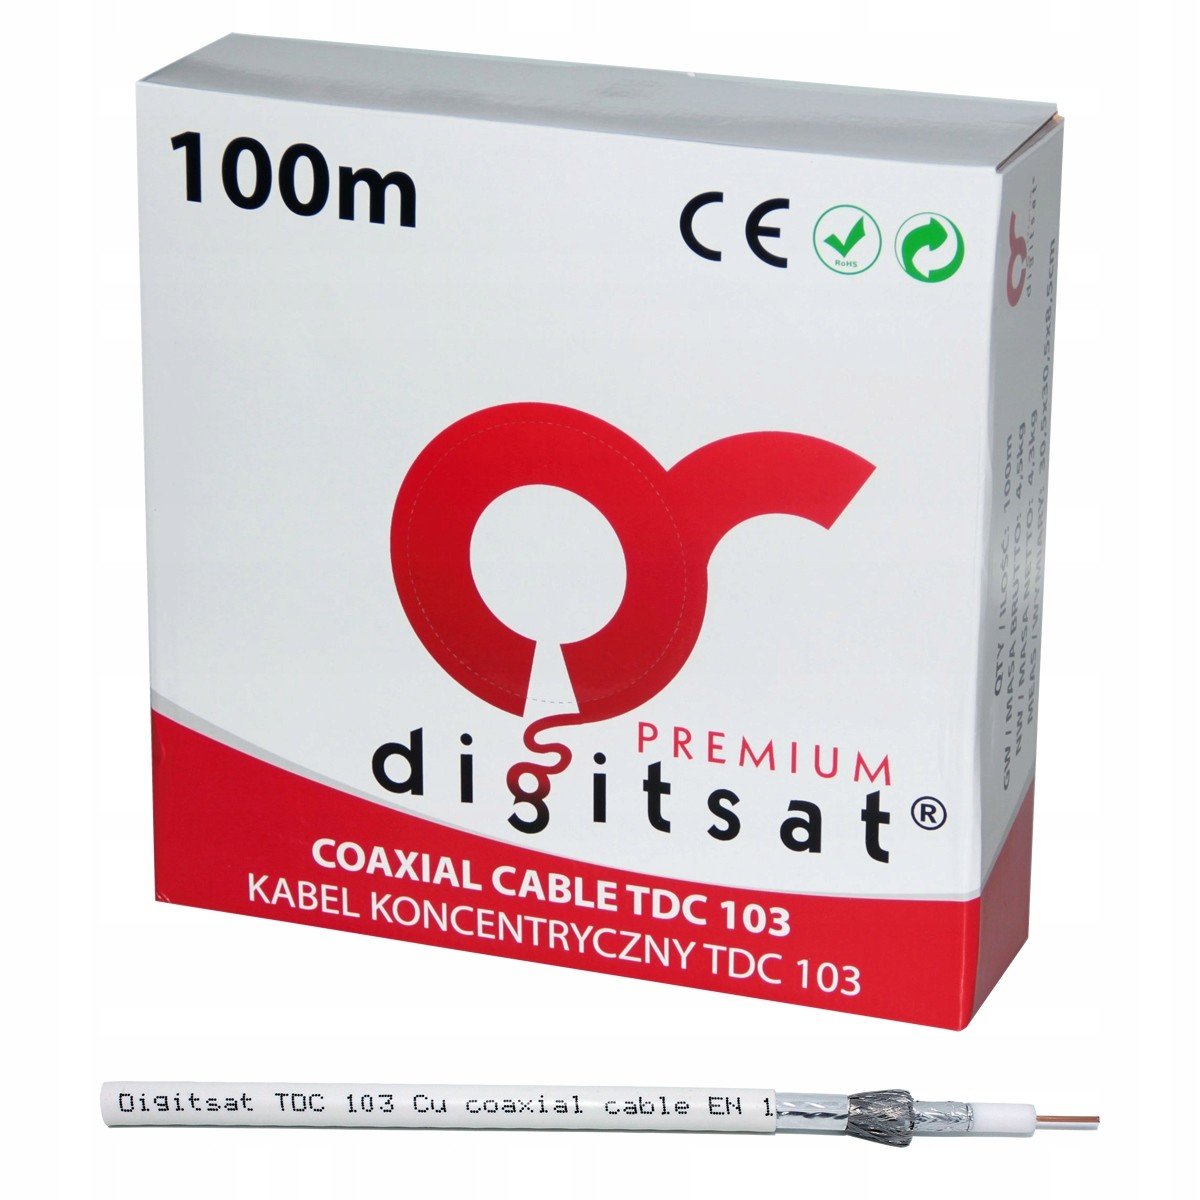 Anténní kabel Digitsat Premium TDC103 100m Cu